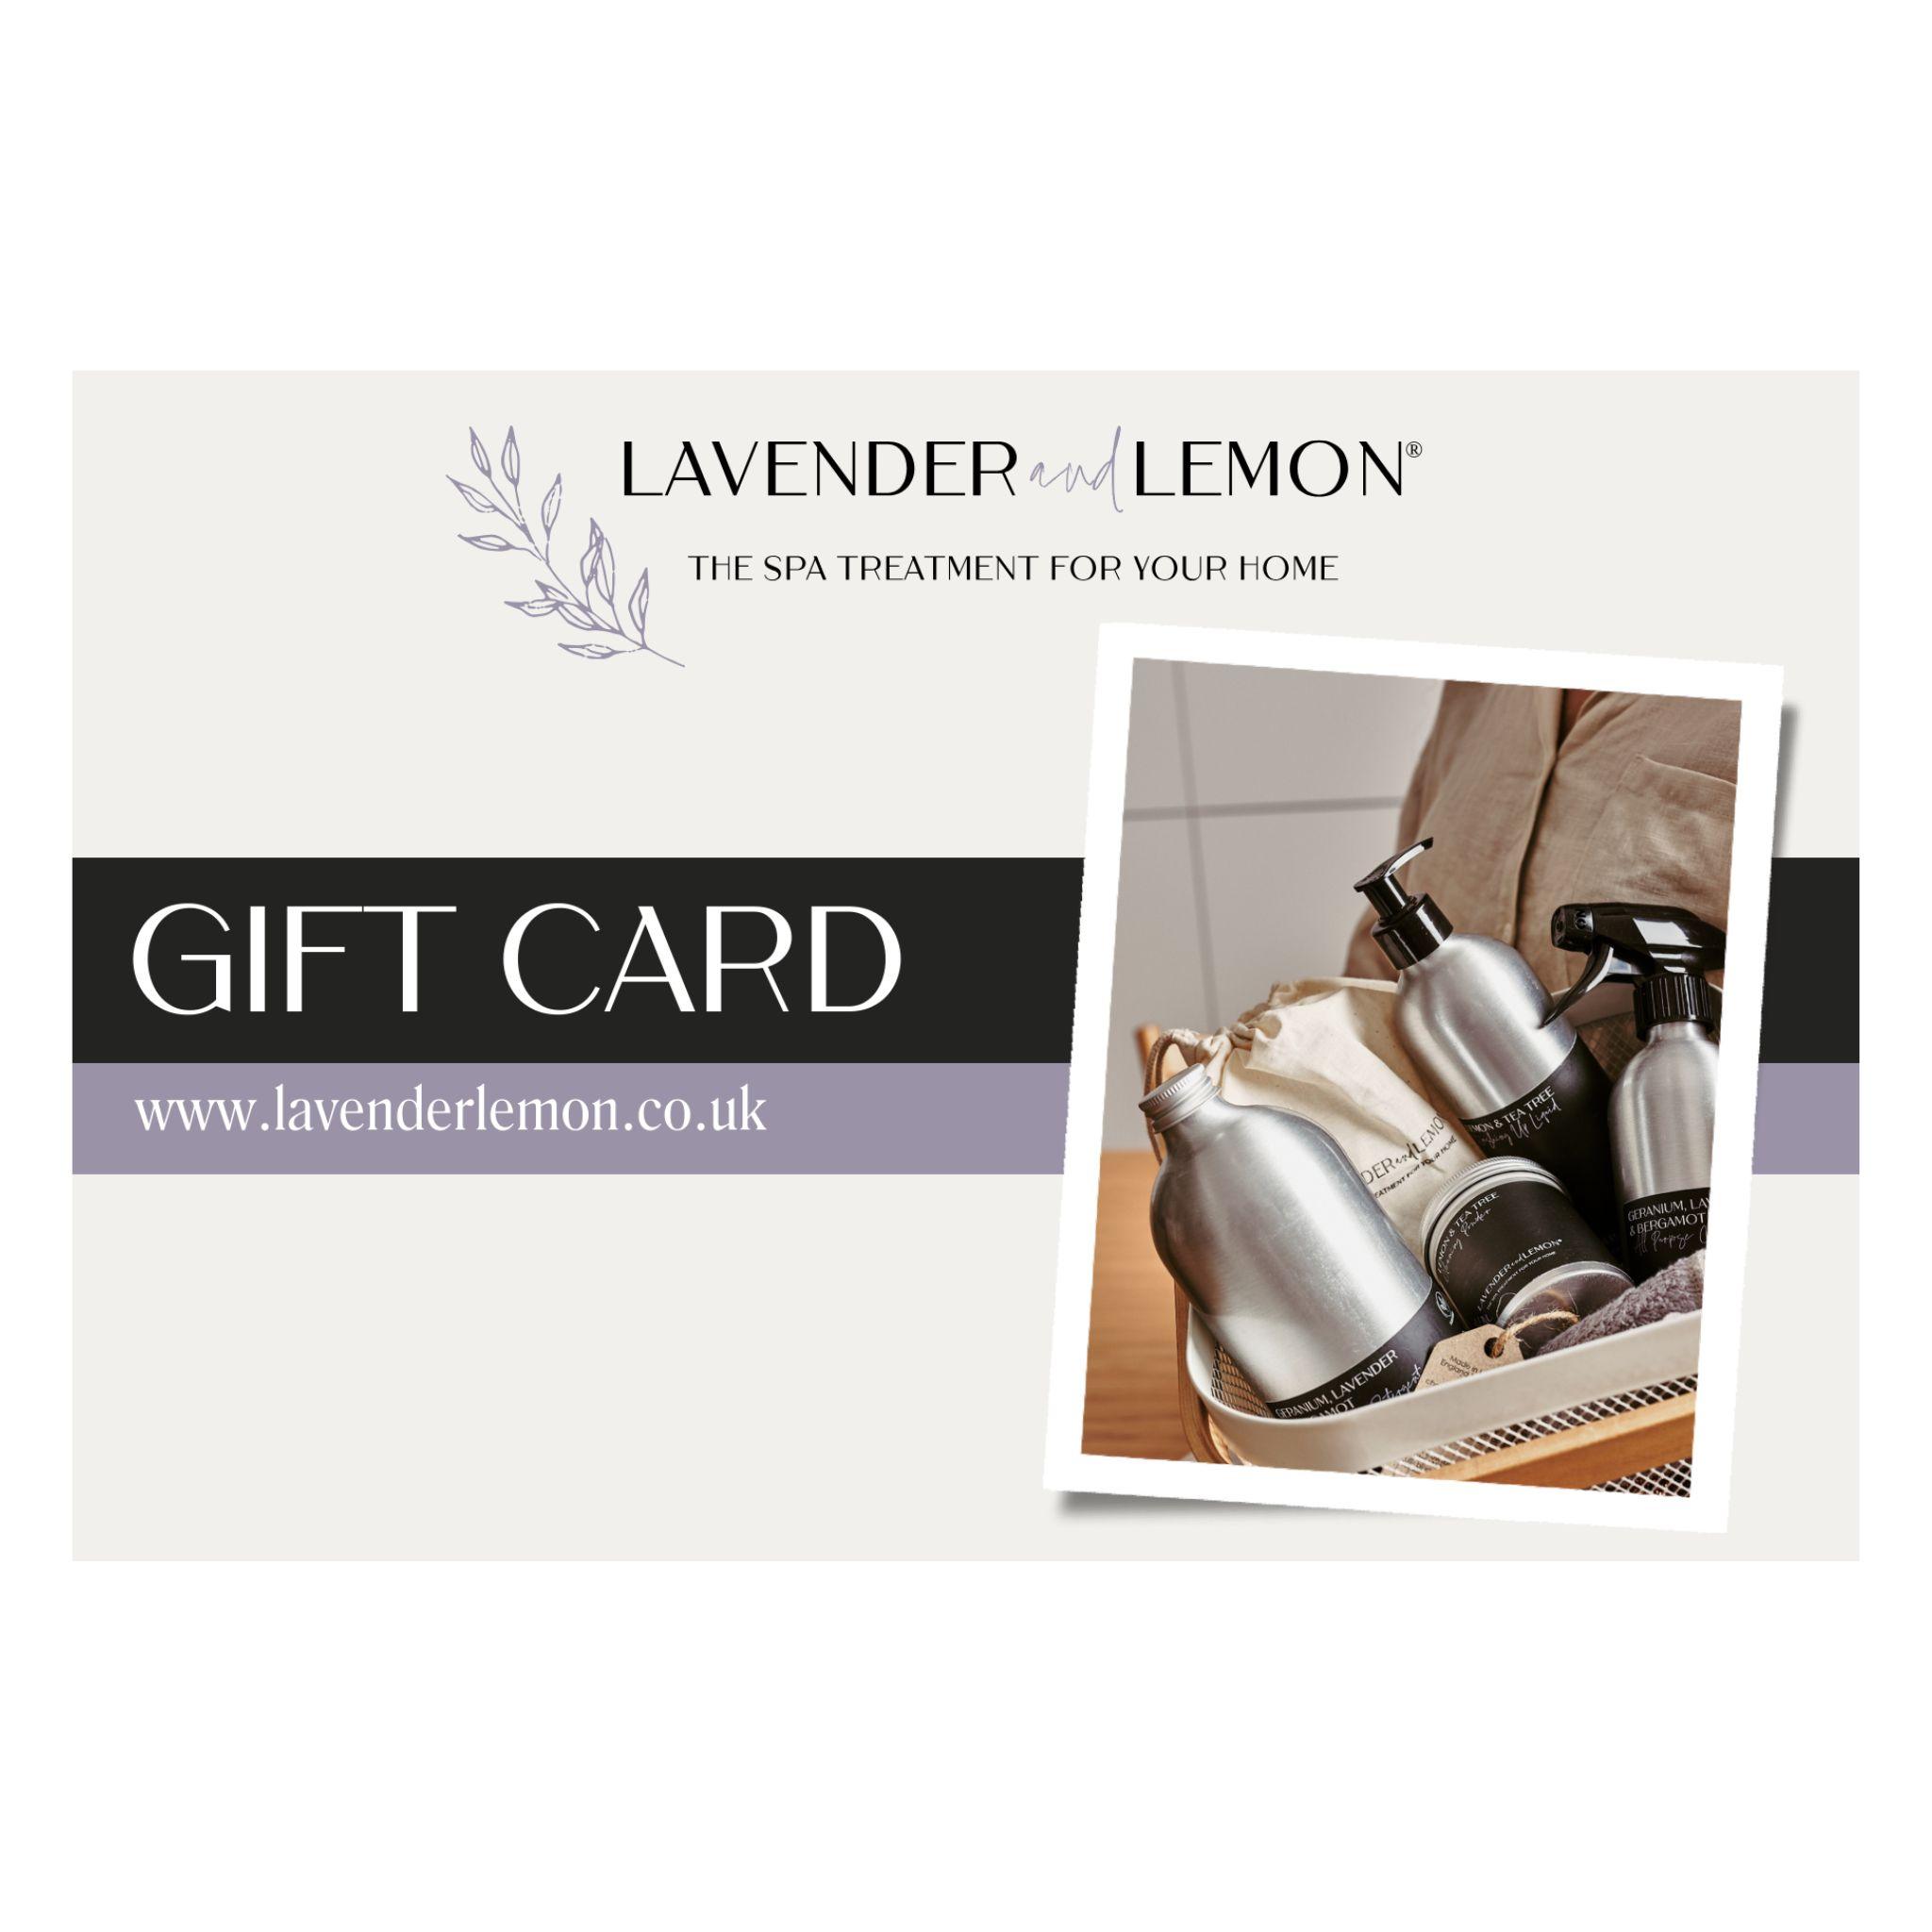 Gift Cards - Lavender & Lemon